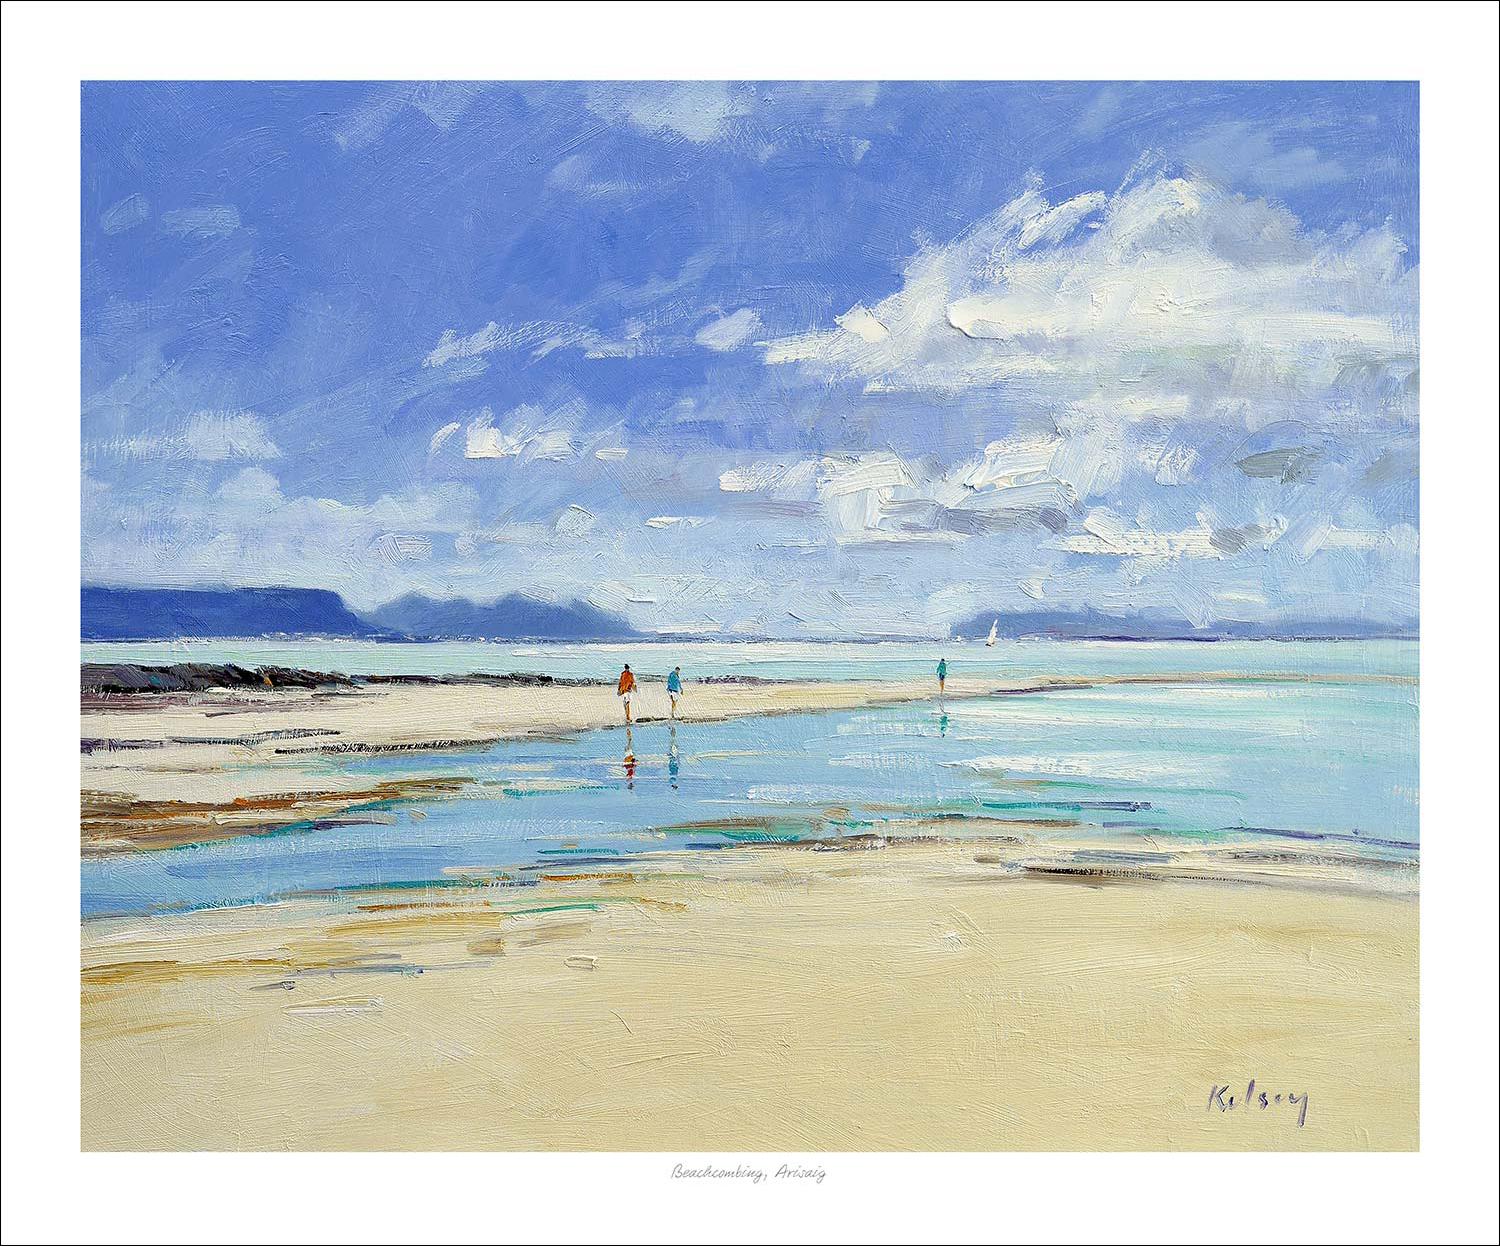 Beachcombing, Arisaig Art Print from an original painting by artist Robert Kelsey